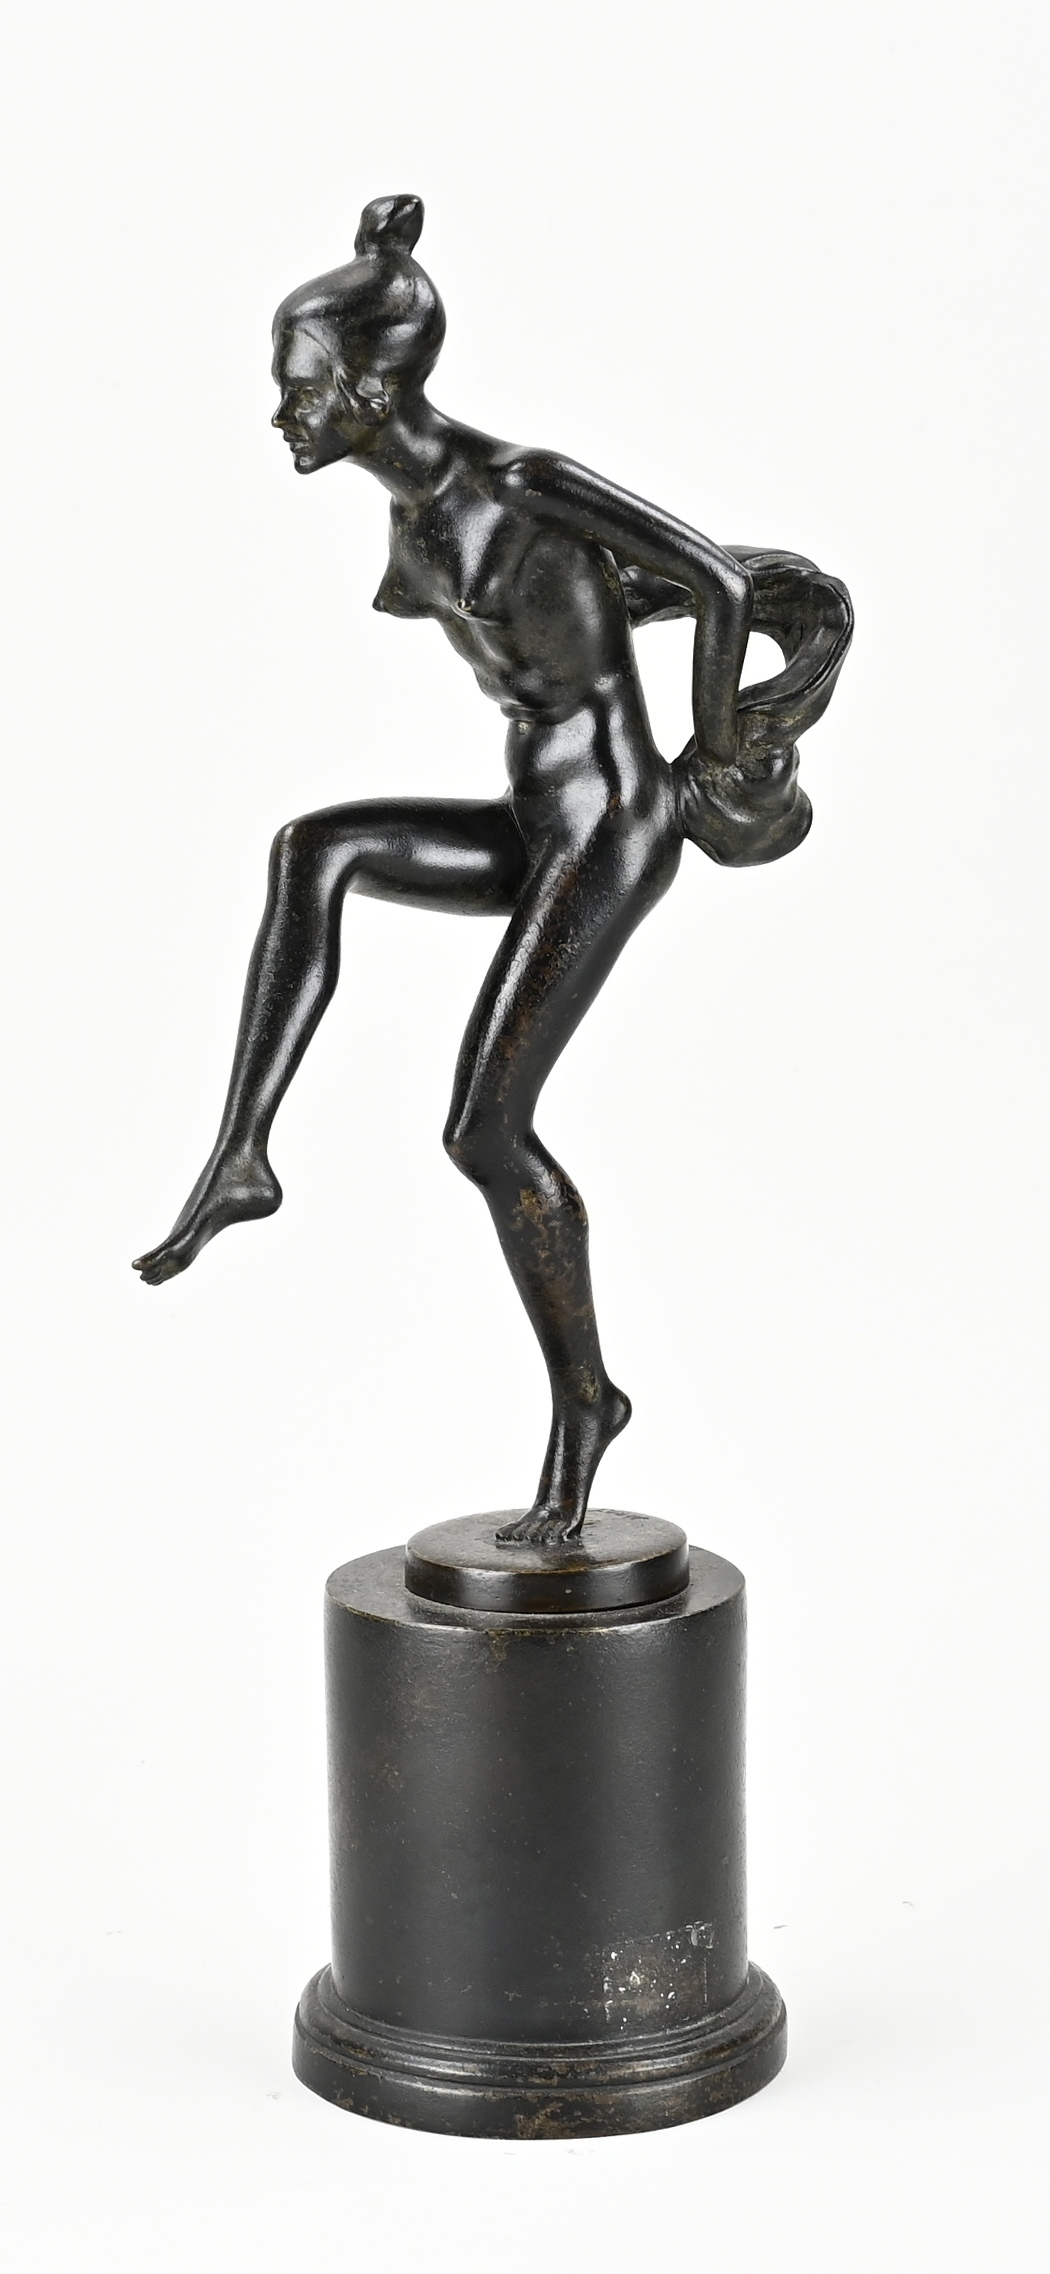 Antique bronze figure, H 36 cm.